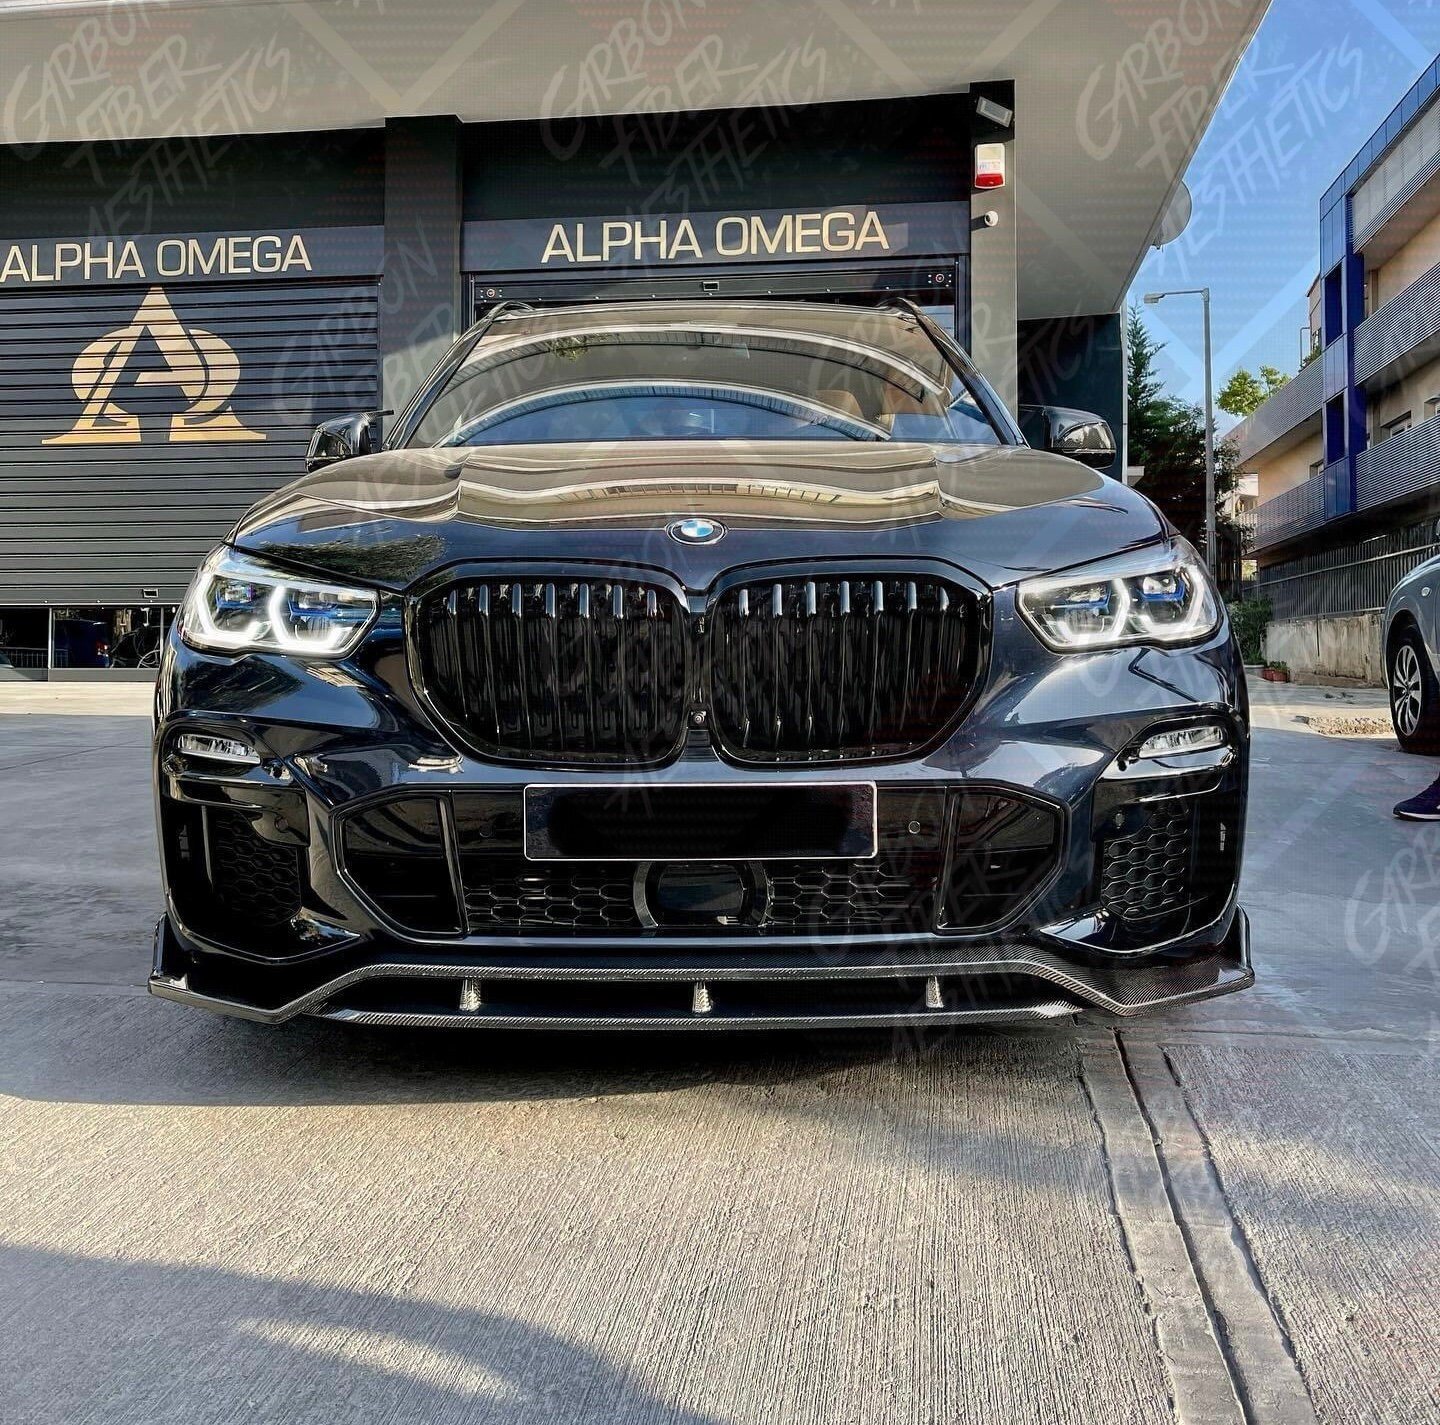 Zubehör BMW X5 G05 (2019 - heute)